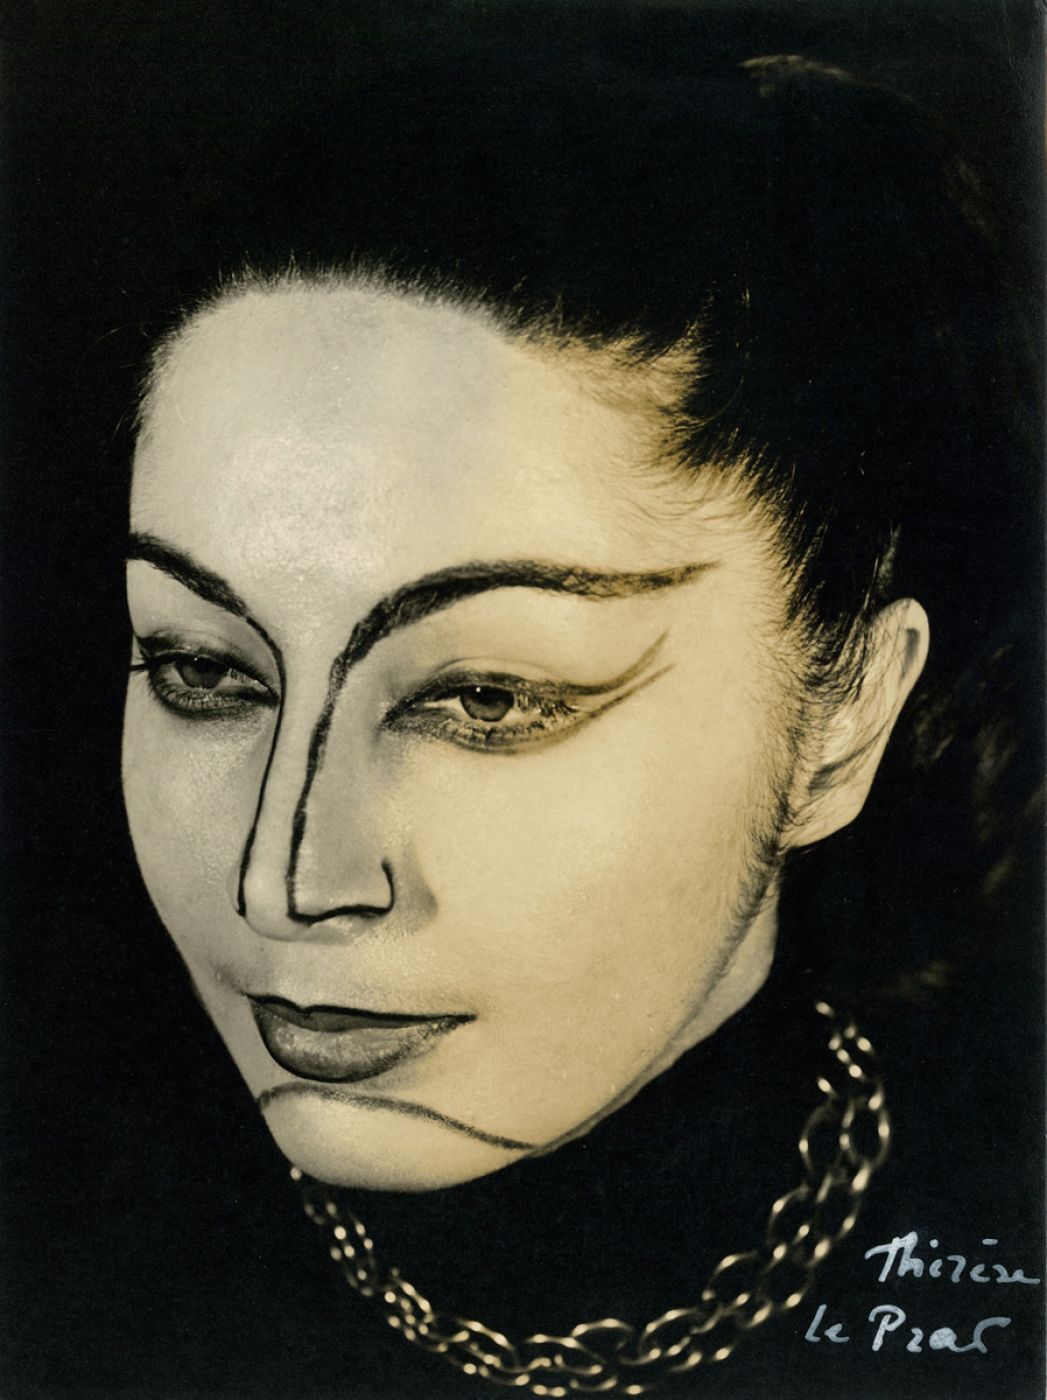 Thérèse Le Prat, “Claire Motte”, 1955 ca.